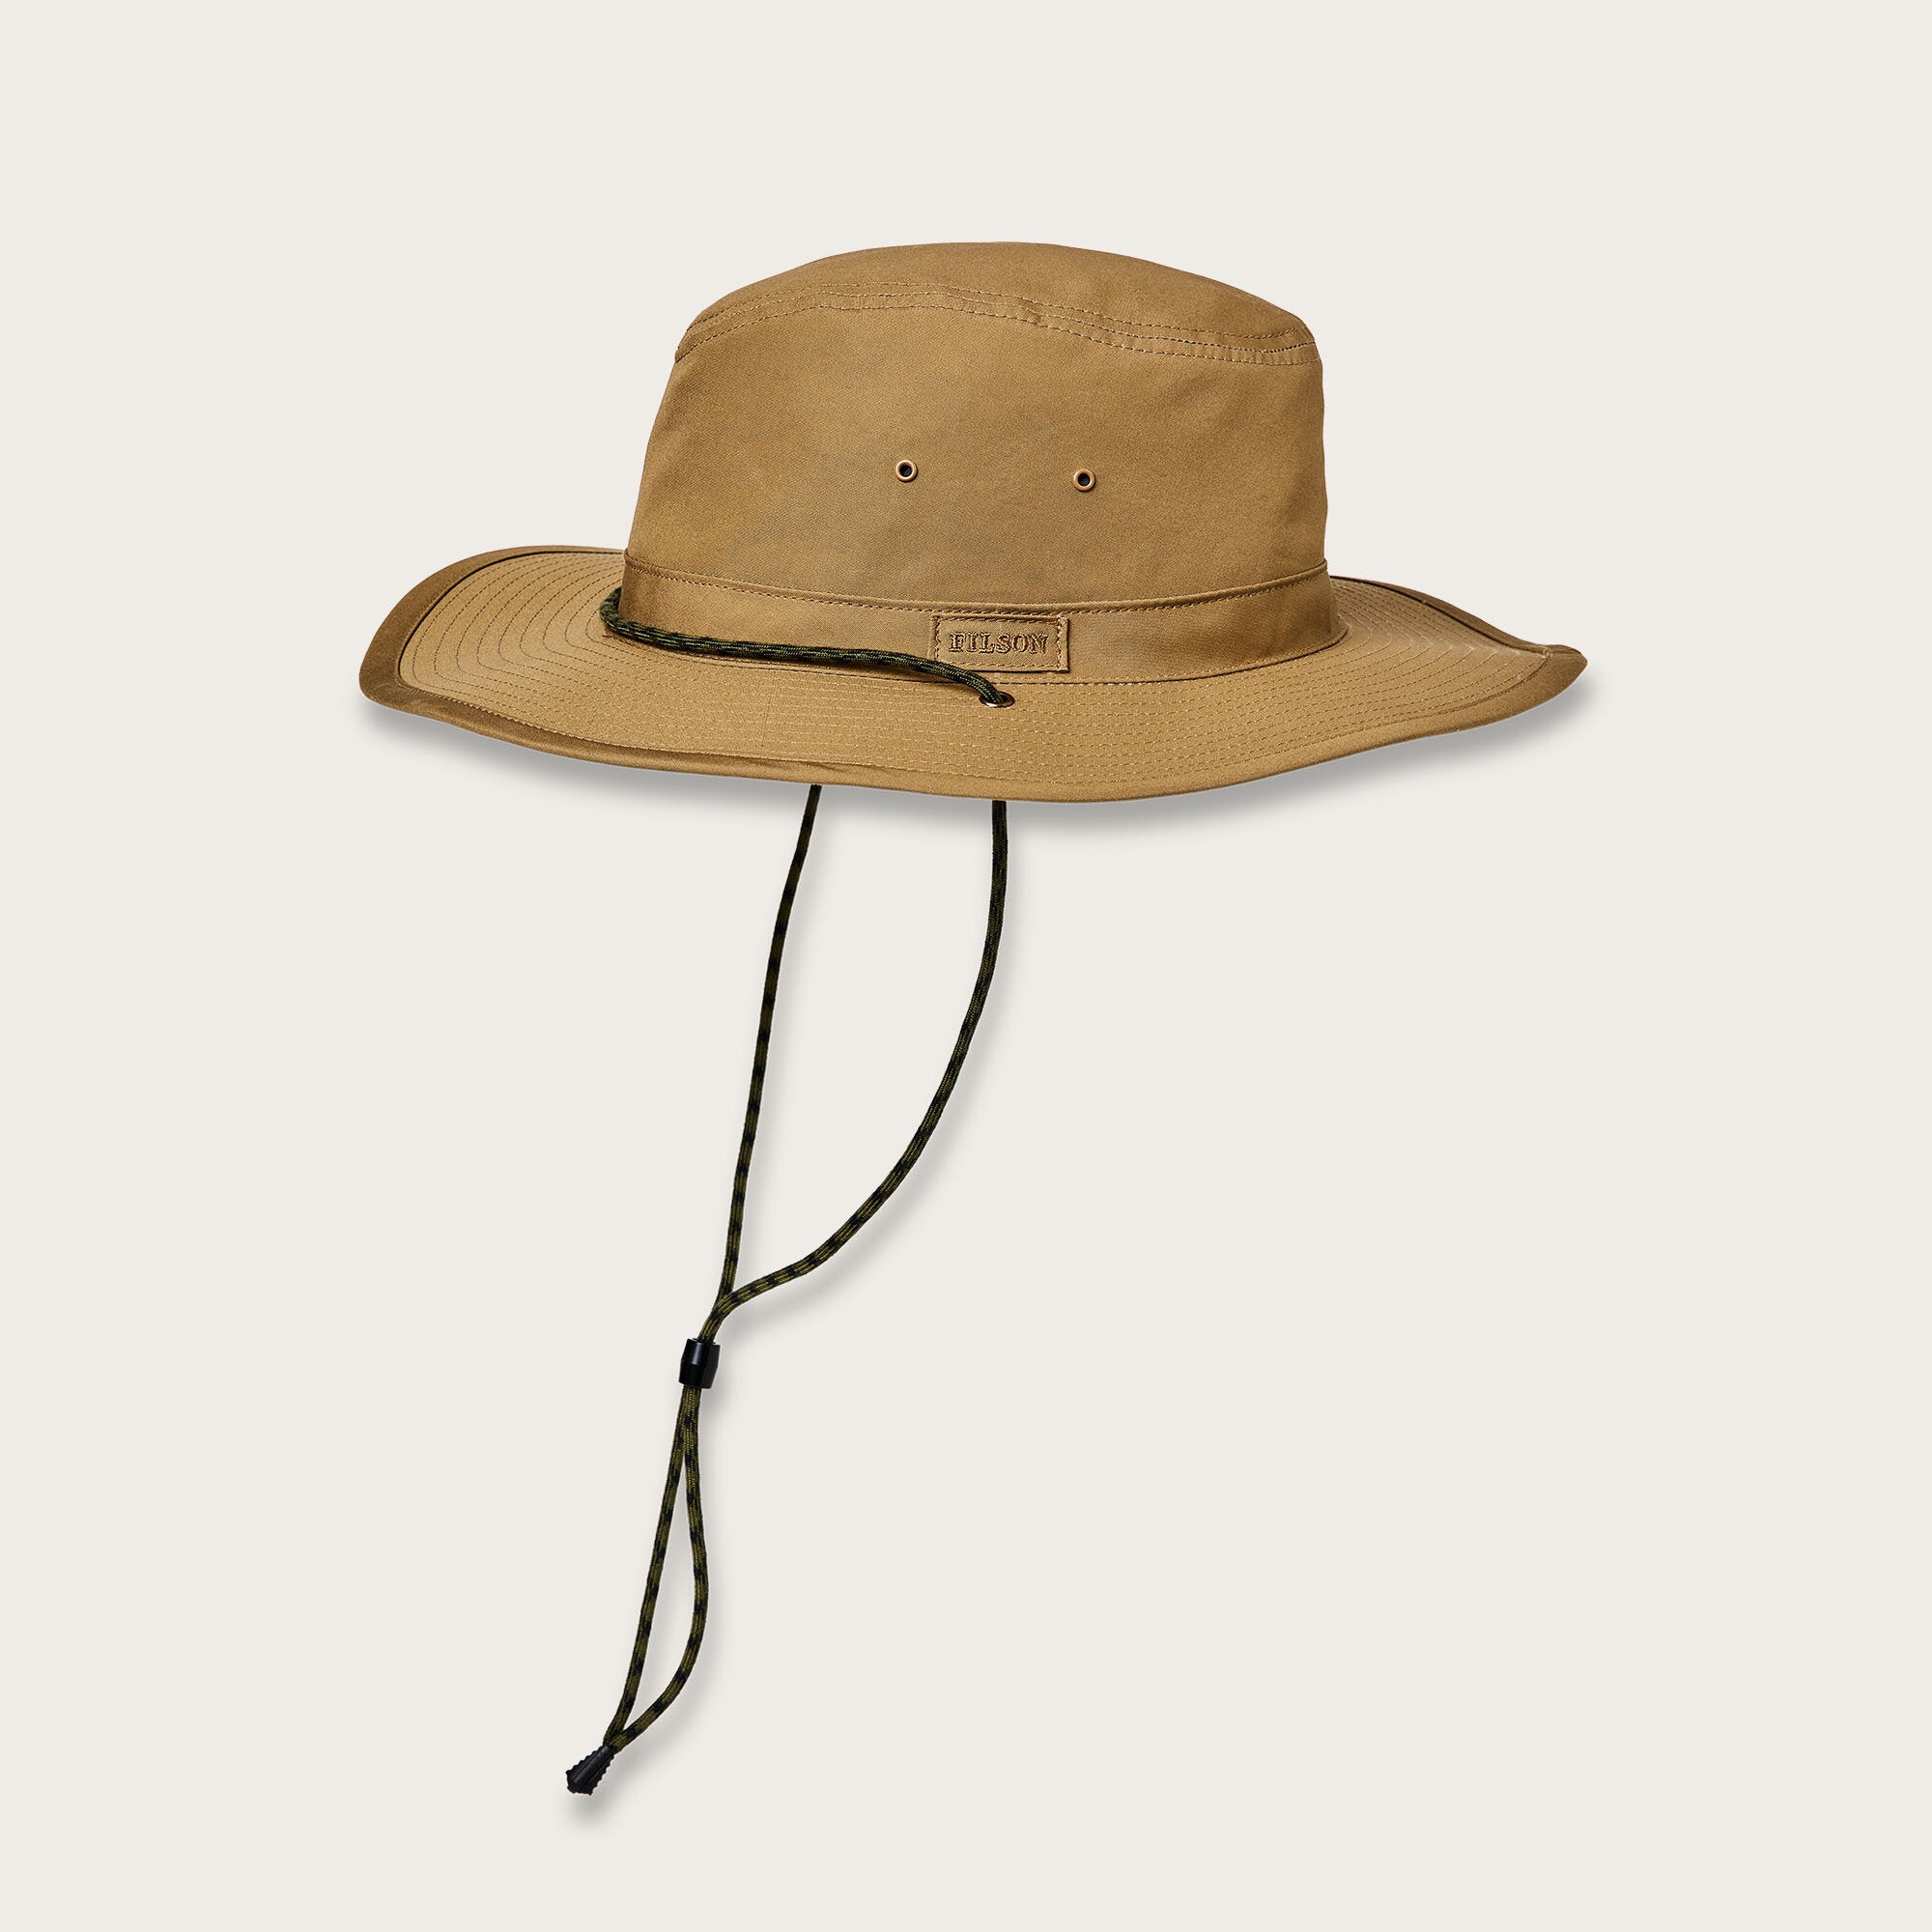 Filson Twin Falls Travel Hat, For Men, Beige Hats